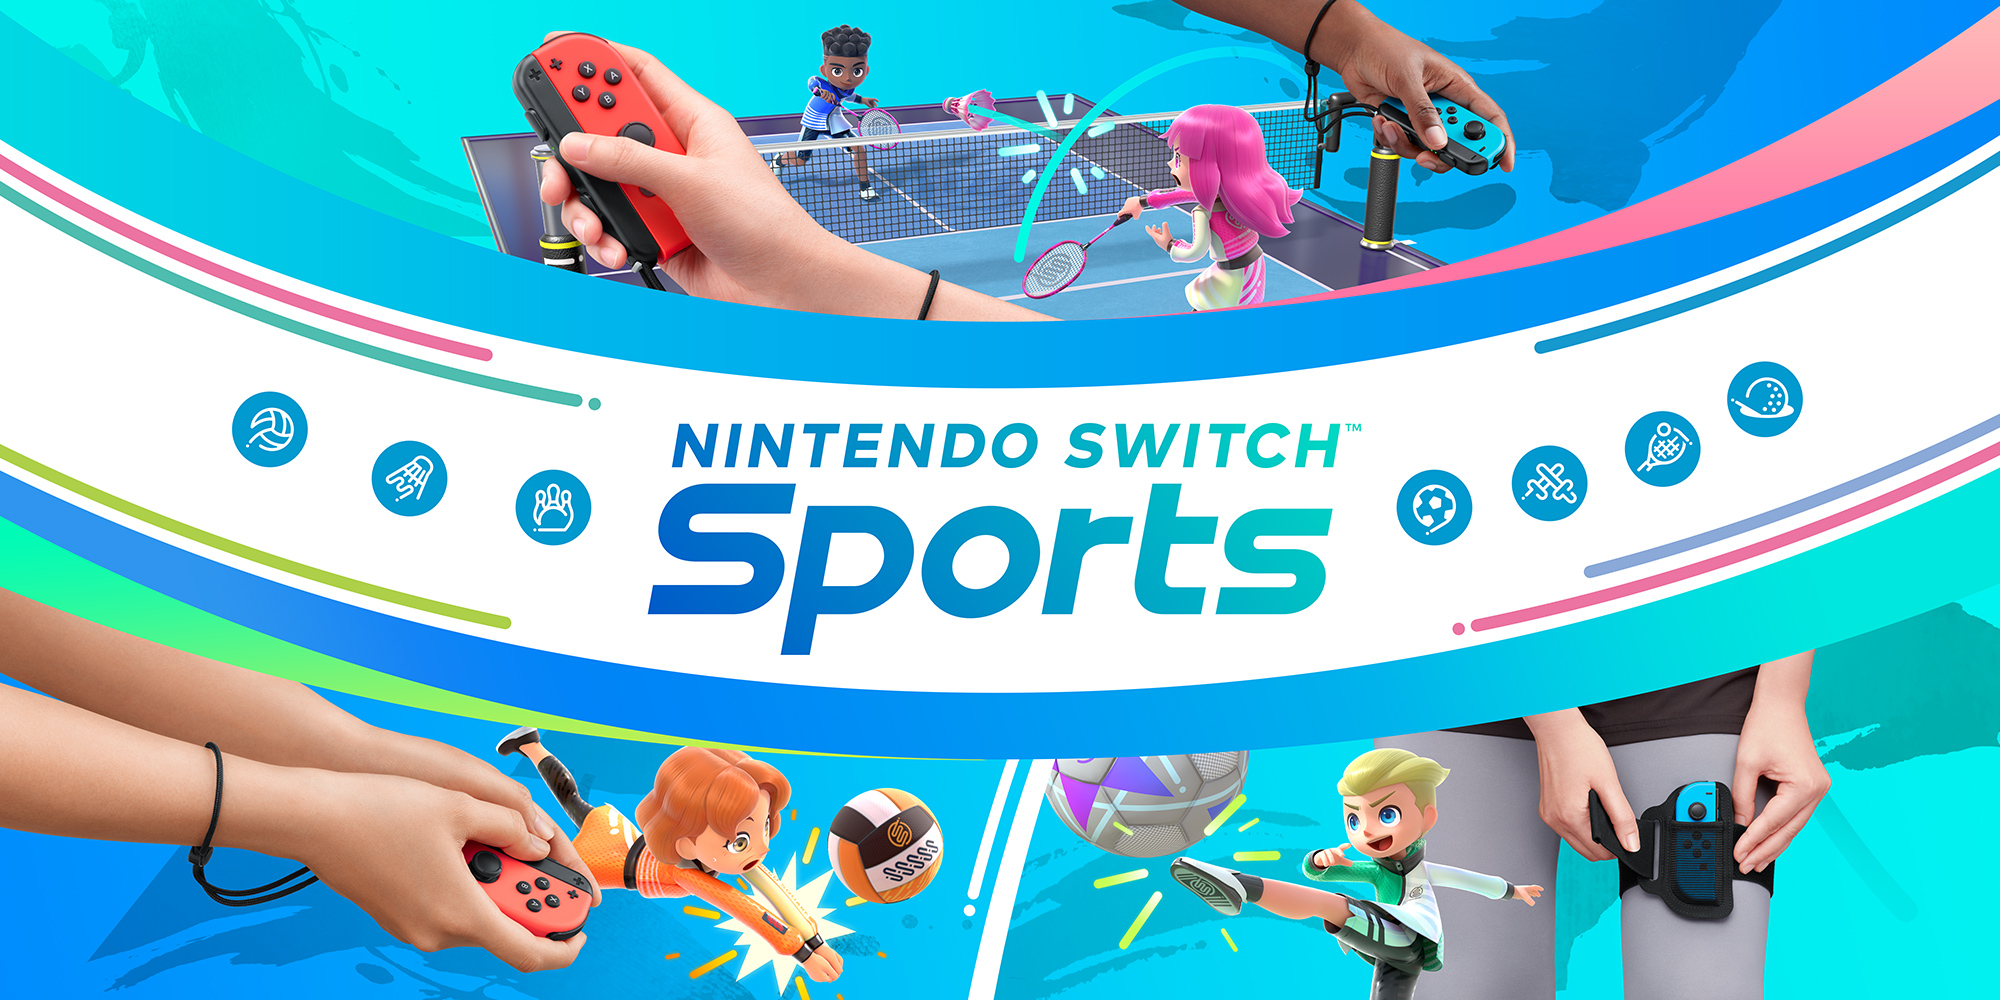 Chispa  chispear Con qué frecuencia híbrido Nintendo Switch Sports | Juegos de Nintendo Switch | Juegos | Nintendo